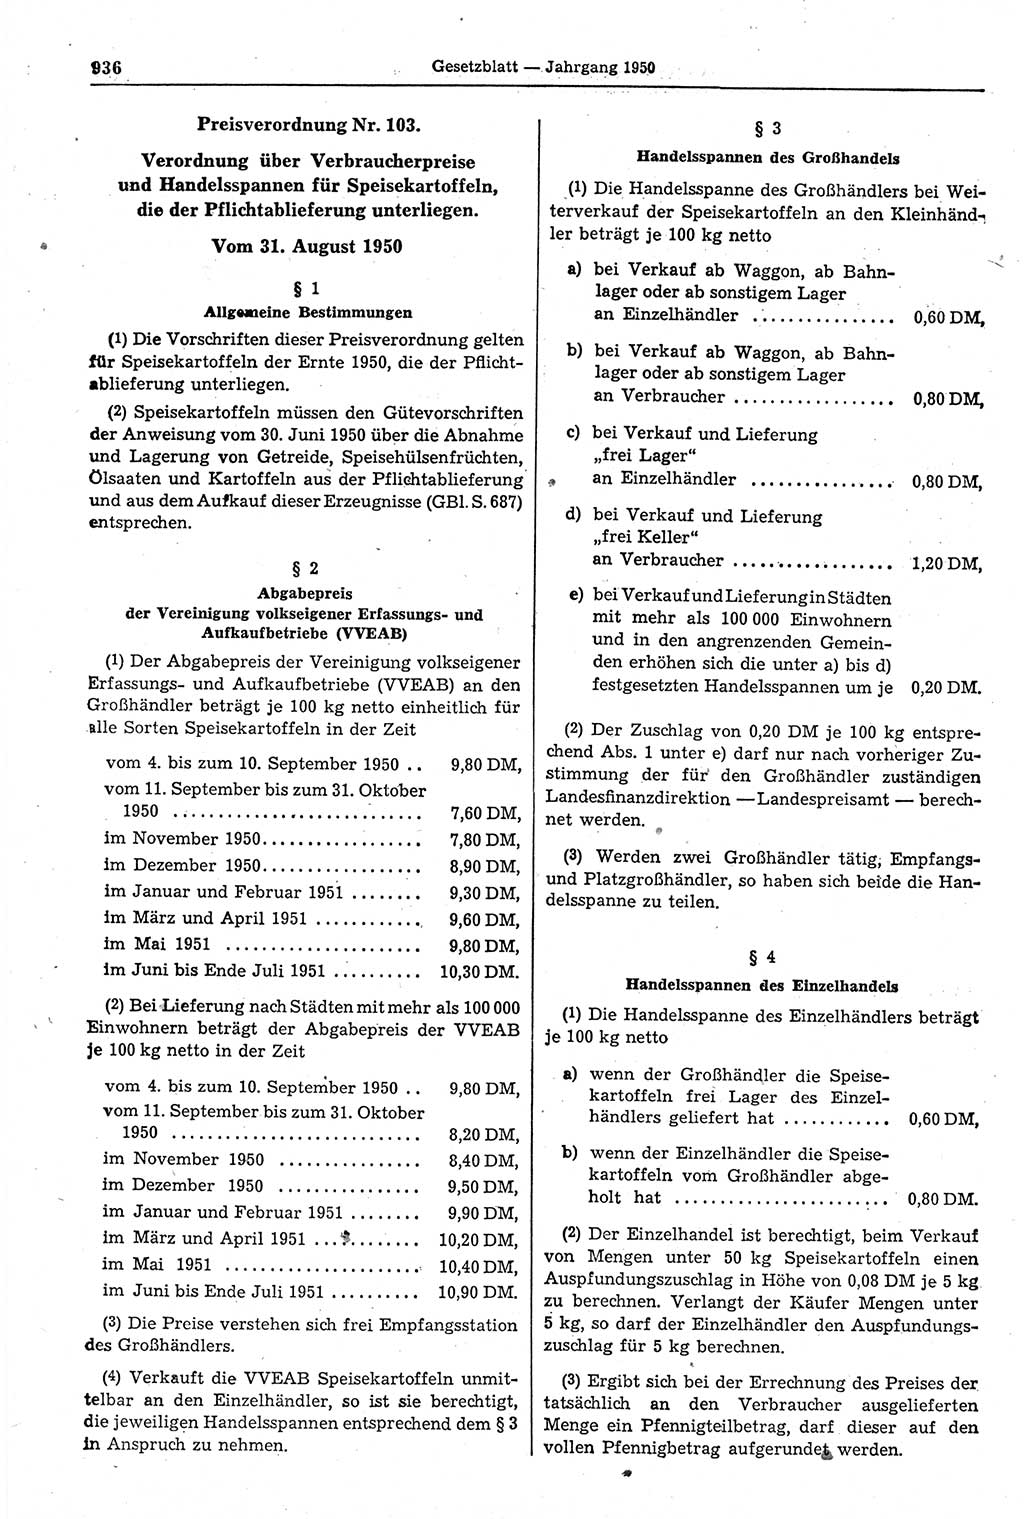 Gesetzblatt (GBl.) der Deutschen Demokratischen Republik (DDR) 1950, Seite 936 (GBl. DDR 1950, S. 936)